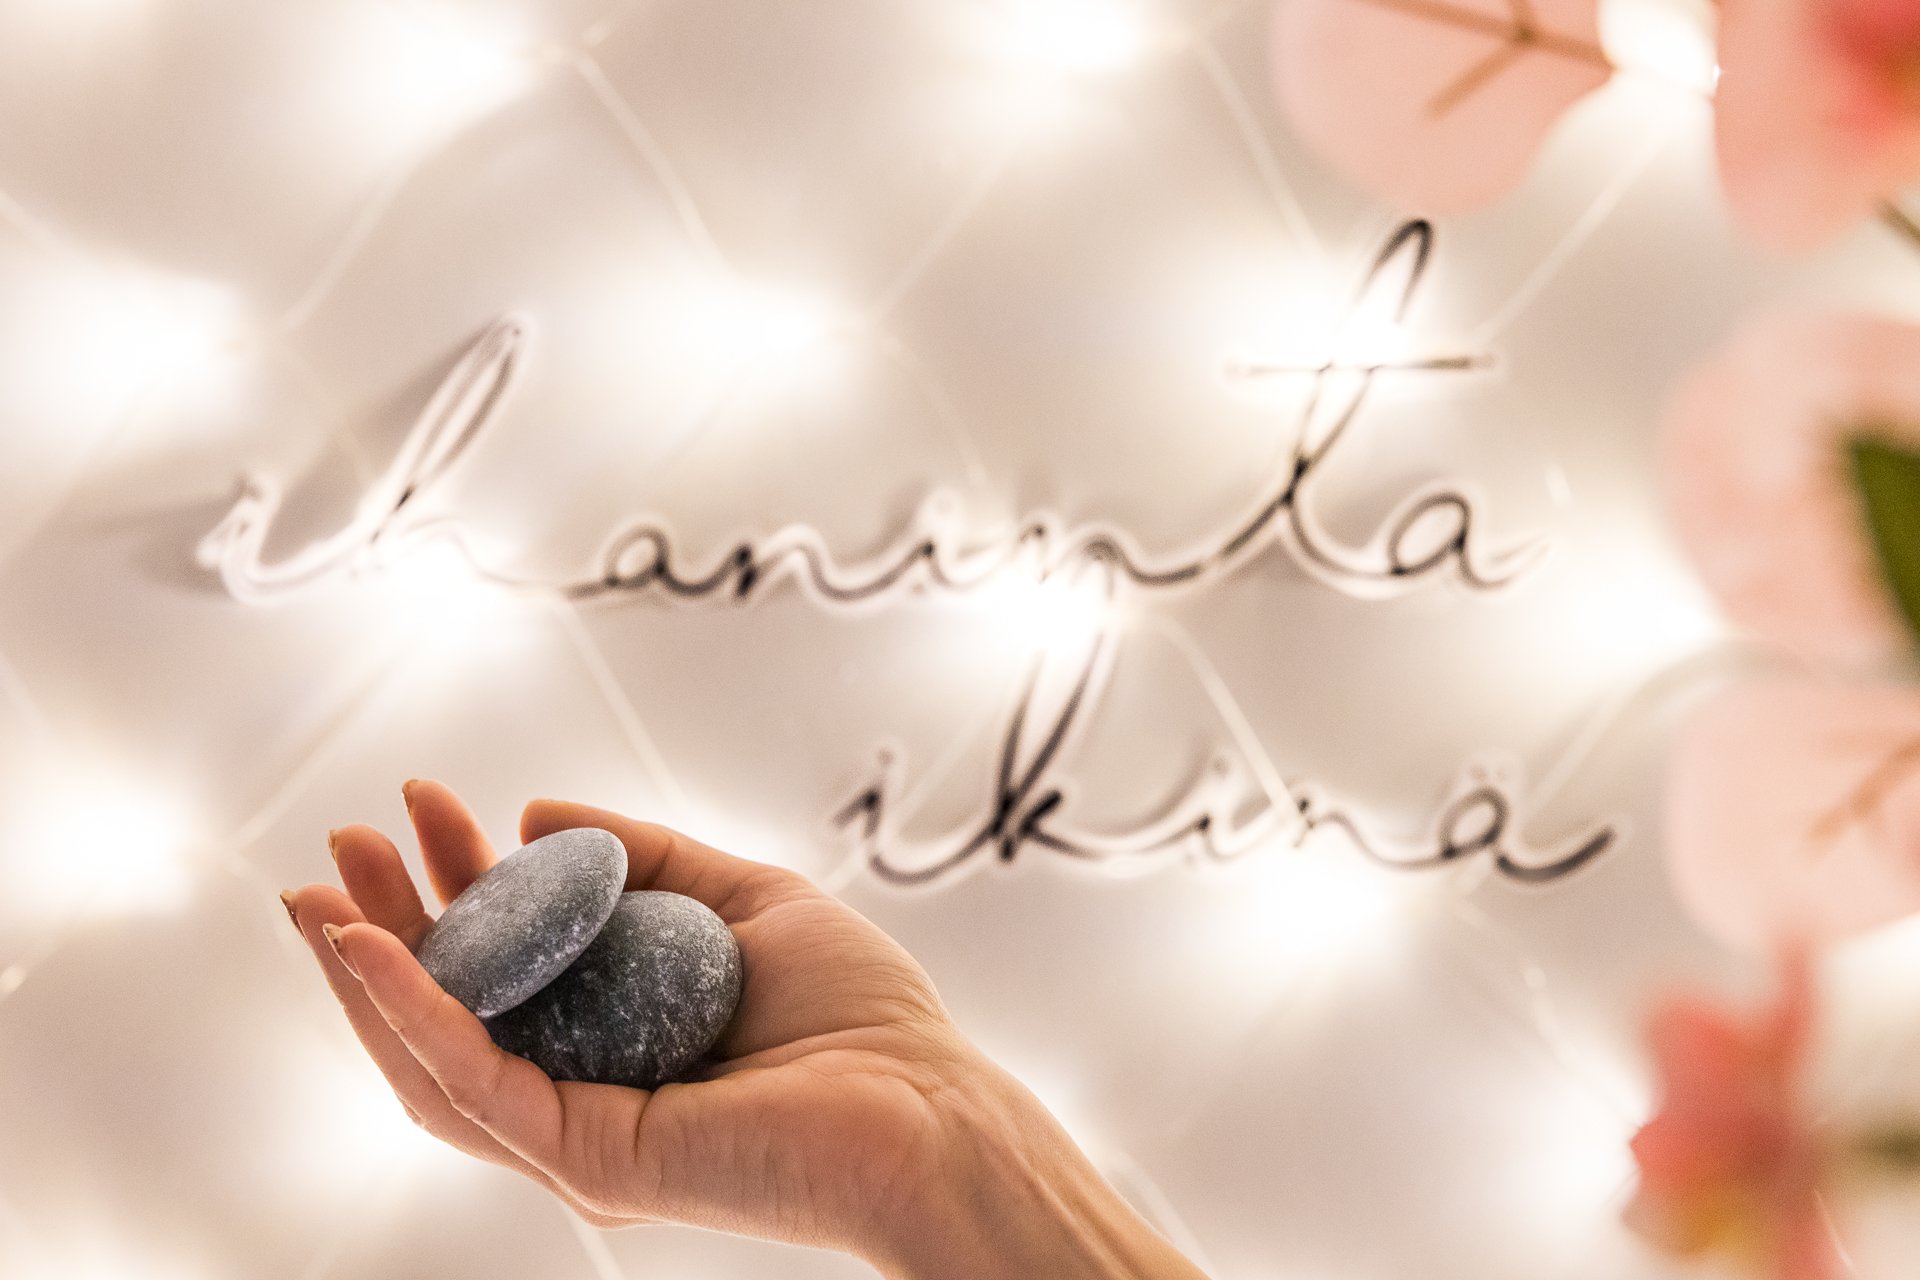 Geneesi energiahoidot. Ihmisen kädessä pyöreitä kiviä, taustan seinällä valoisa teksti "Ihaninta ikinä". | Business Joensuu, yrityspalvelut